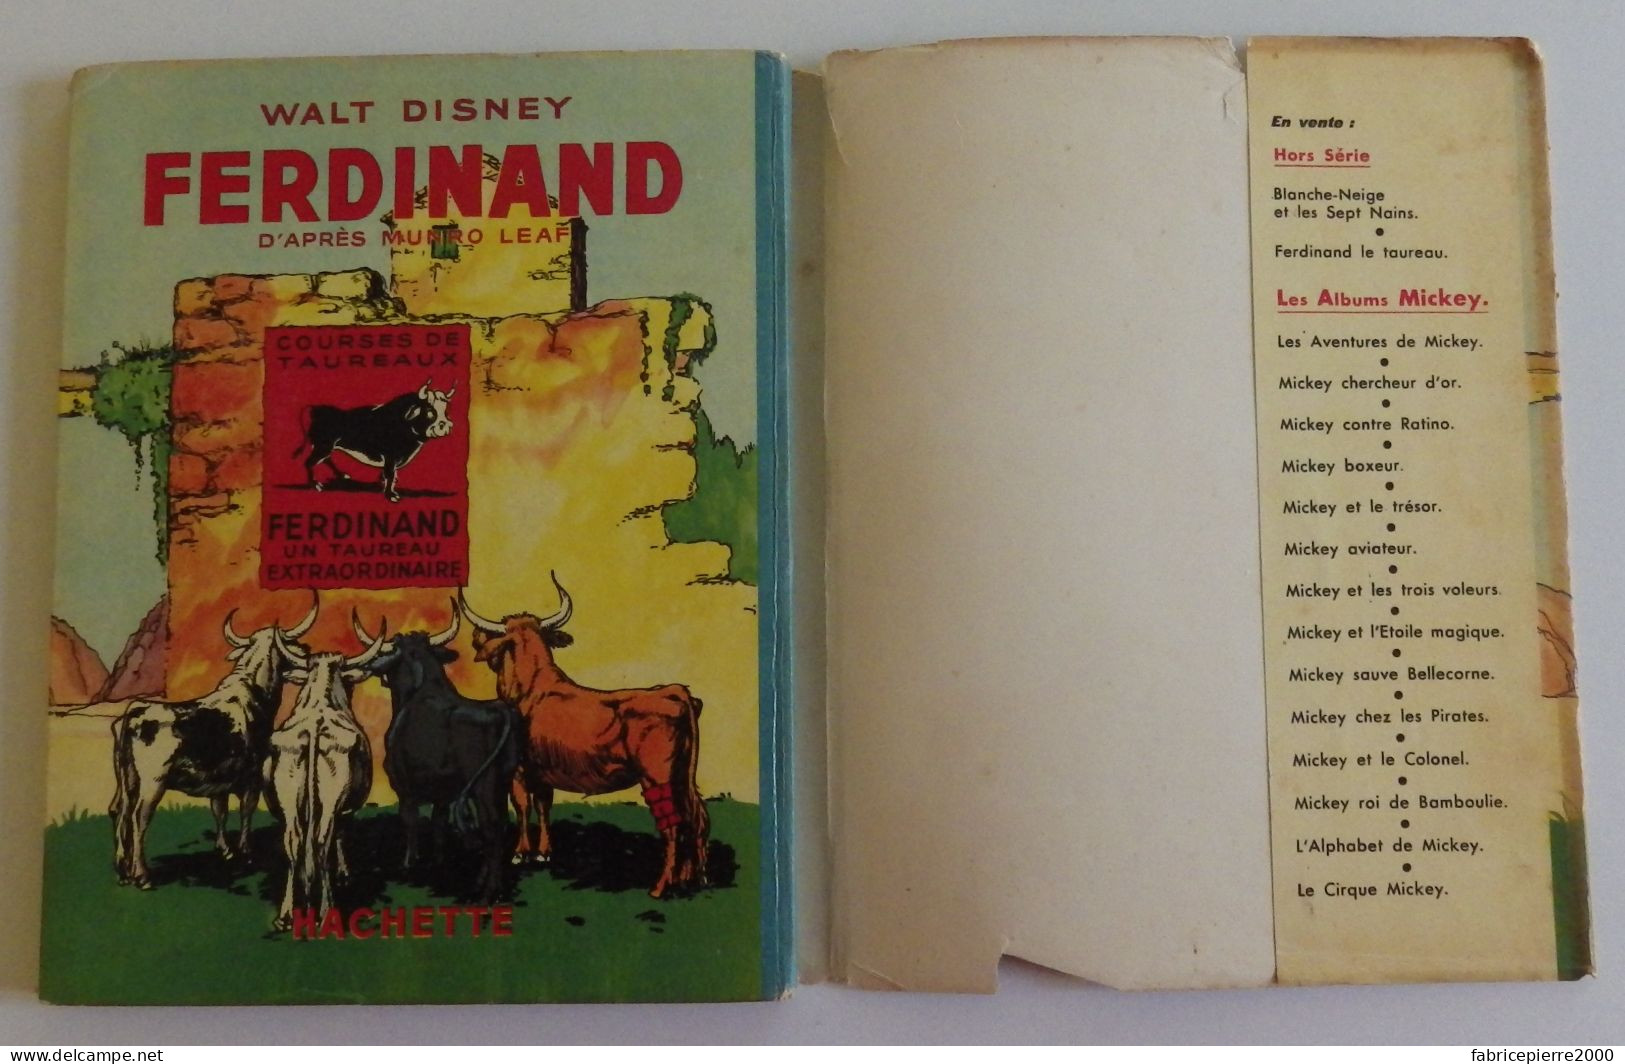 FERDINAND de Walt DISNEY - 1939 Excellent état, EO Edition Originale française, avec jaquette